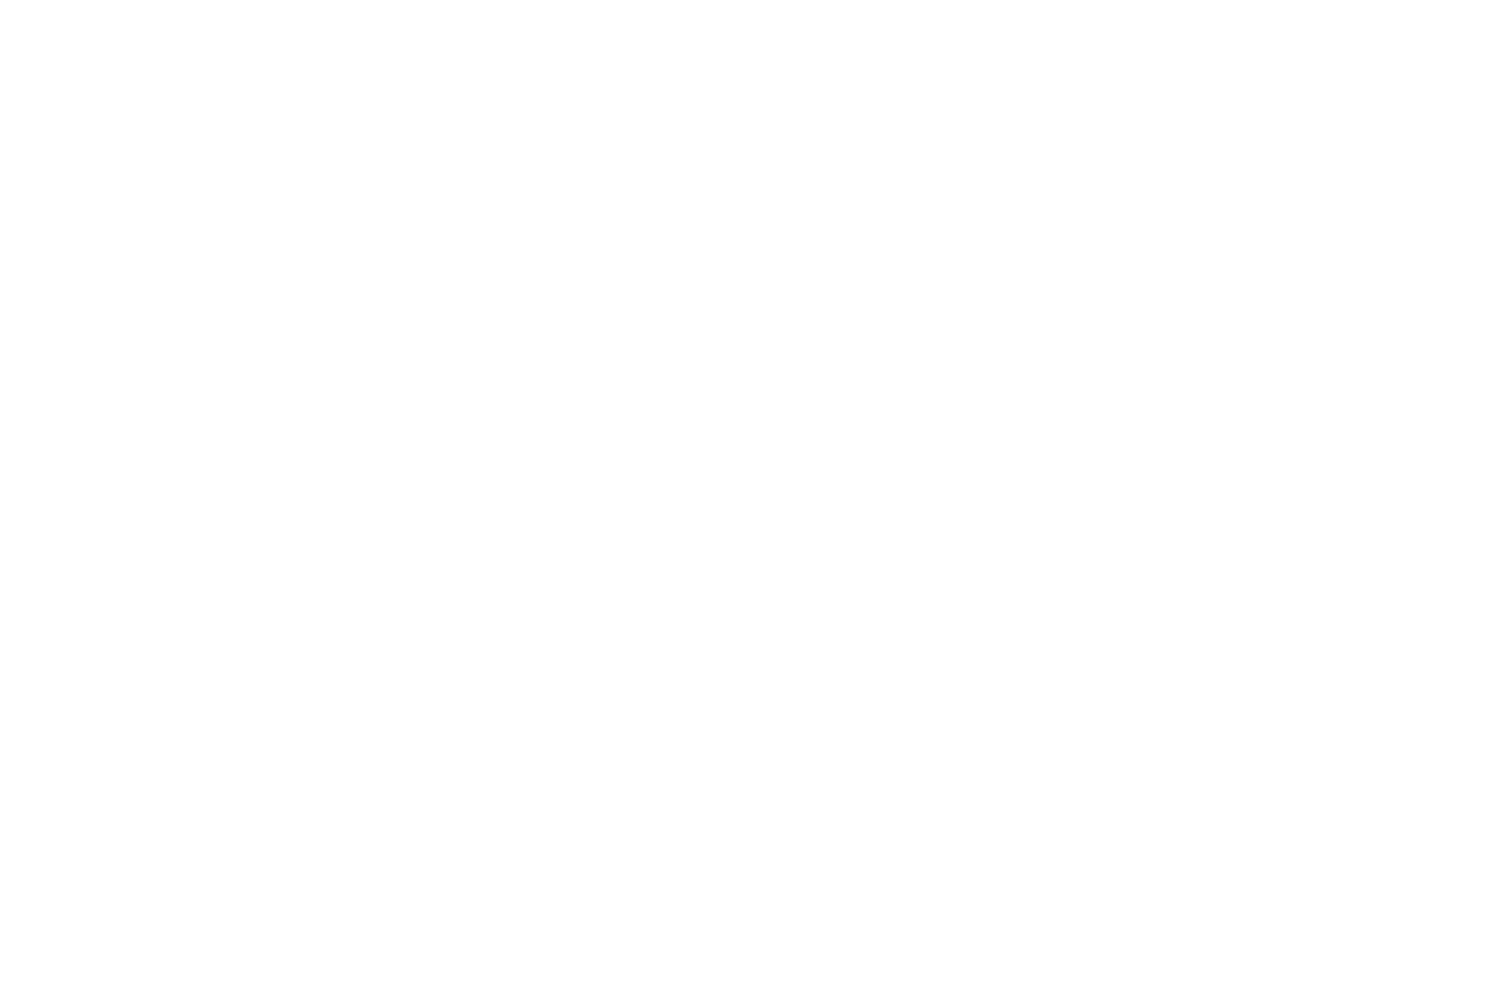 Meike Simon Photography